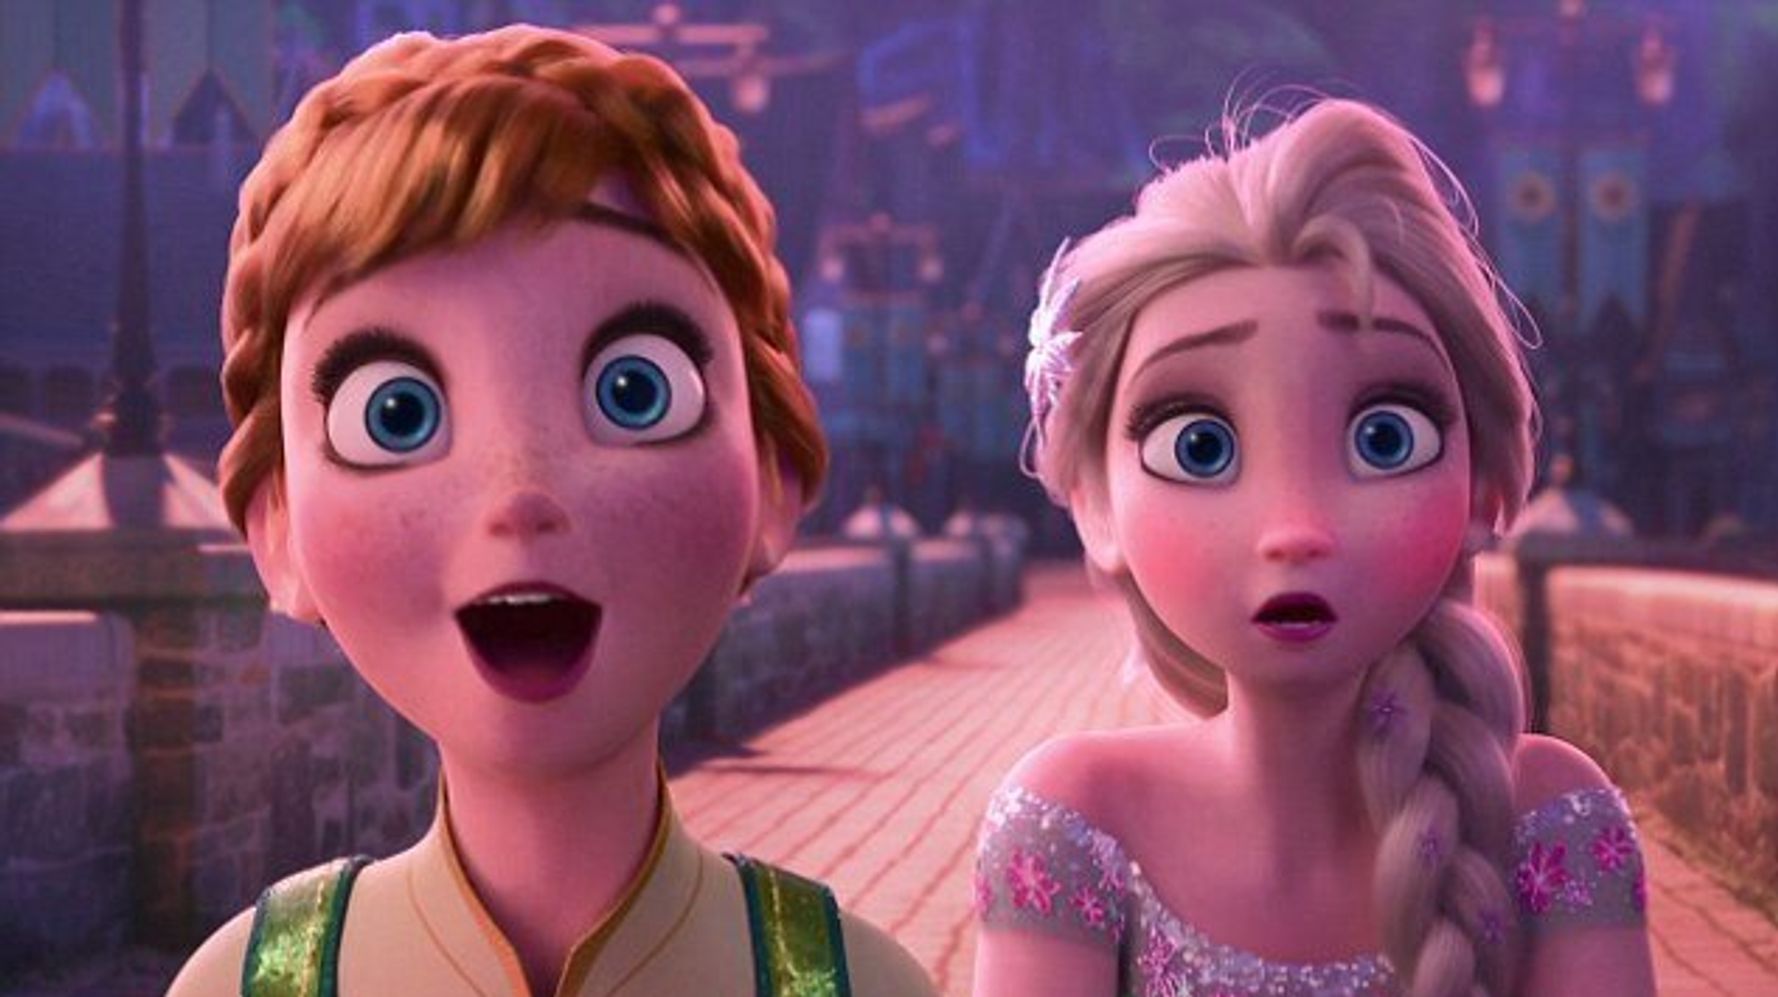 Lo recordar de 'Frozen' antes de ver 'Frozen 2' | El HuffPost